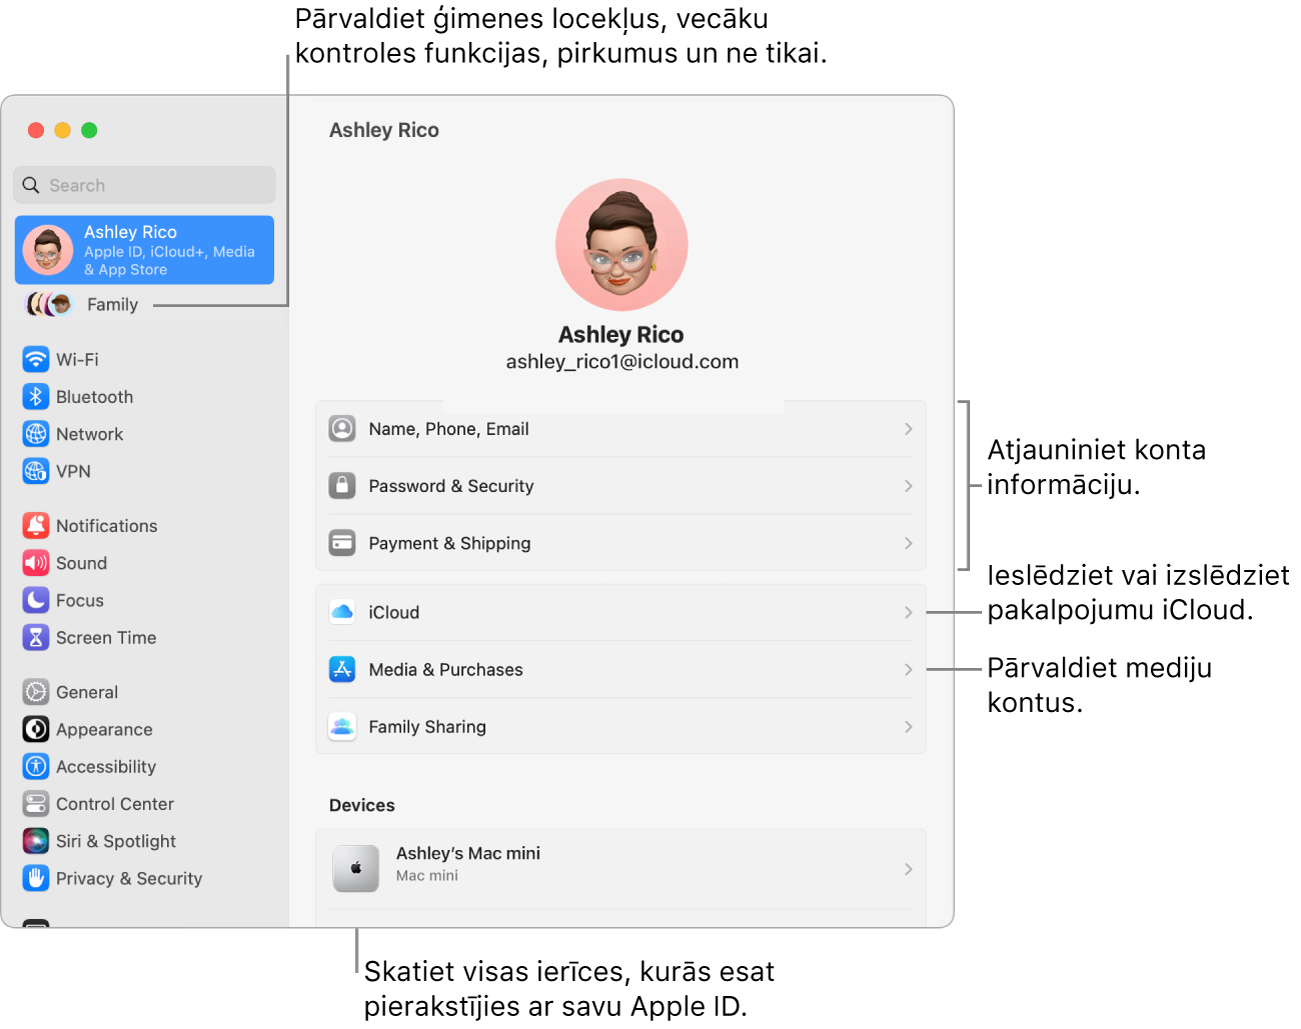 Apple ID iestatījumi izvēlnē System Settings ar remarkām atjaunināt konta informāciju, ieslēgt vai izslēgt iCloud funkcijas, pārvaldīt kontus, un sadaļu Family, kur varat pārvaldīt ģimenes locekļus, vecāku kontroles funkcijas, pirkumus un ne tikai.